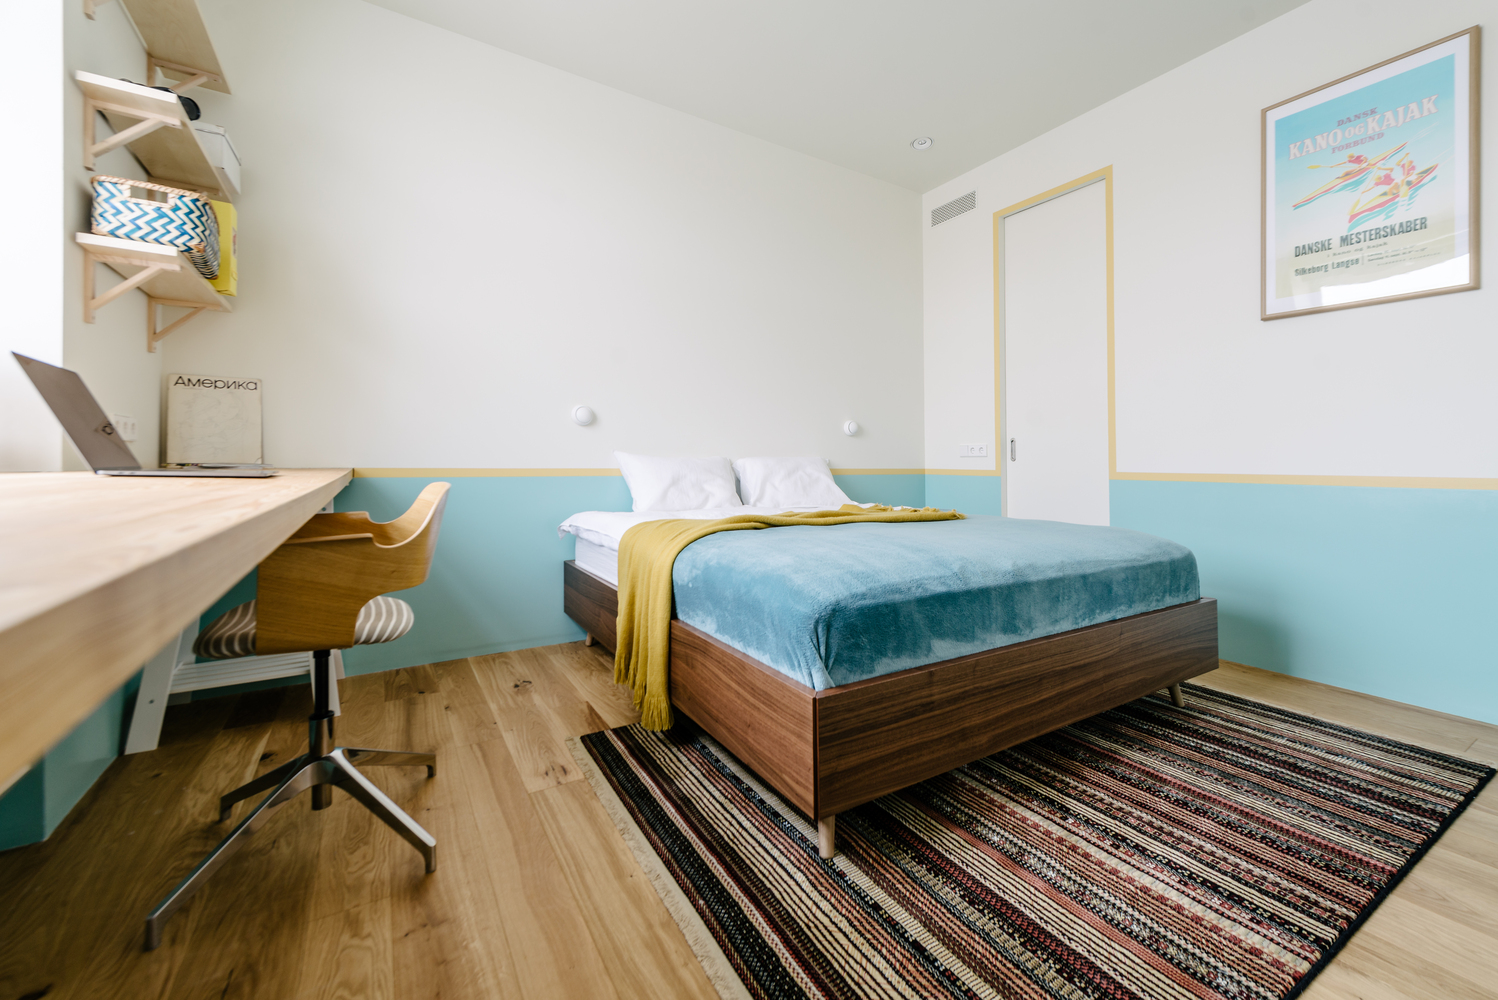 Phòng ngủ sử dụng sơn tường màu trắng và xanh lam nhạt, kết hợp đường sơn viền màu vàng mù tạt như một dải phân cách nổi bật. Thảm trải sàn họa tiết kẻ sọc giúp 'nới rộng' chiều dài căn phòng bằng thị giác.